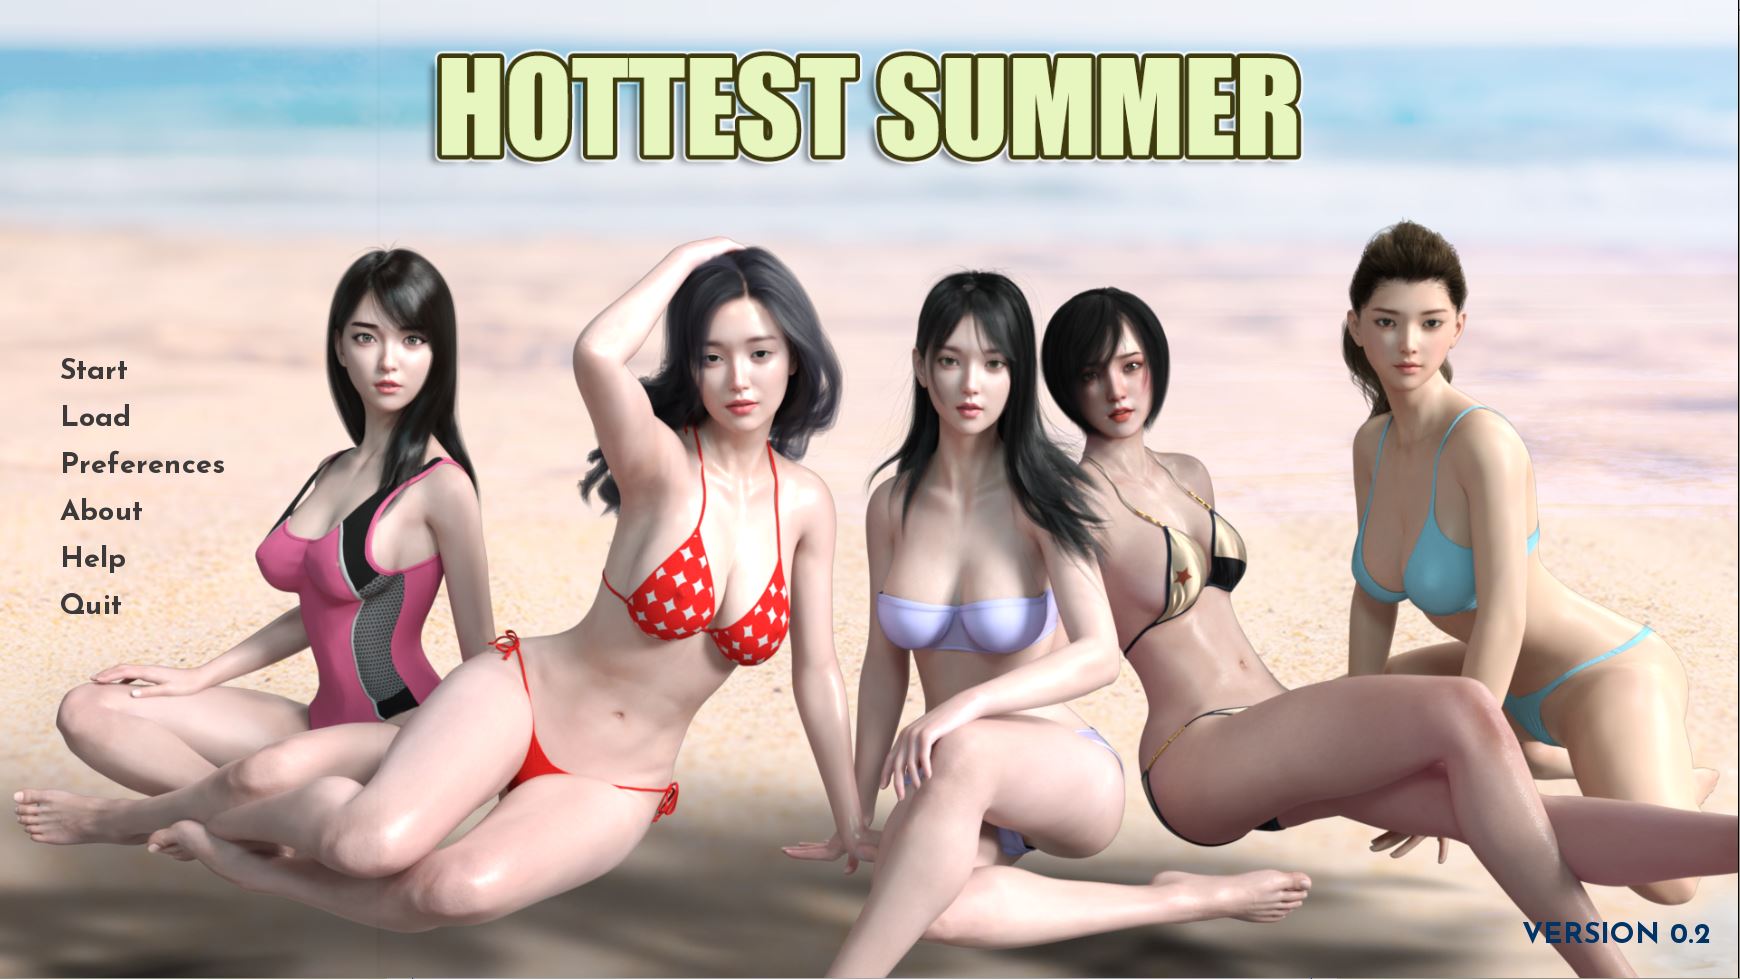 Hottest Summer image